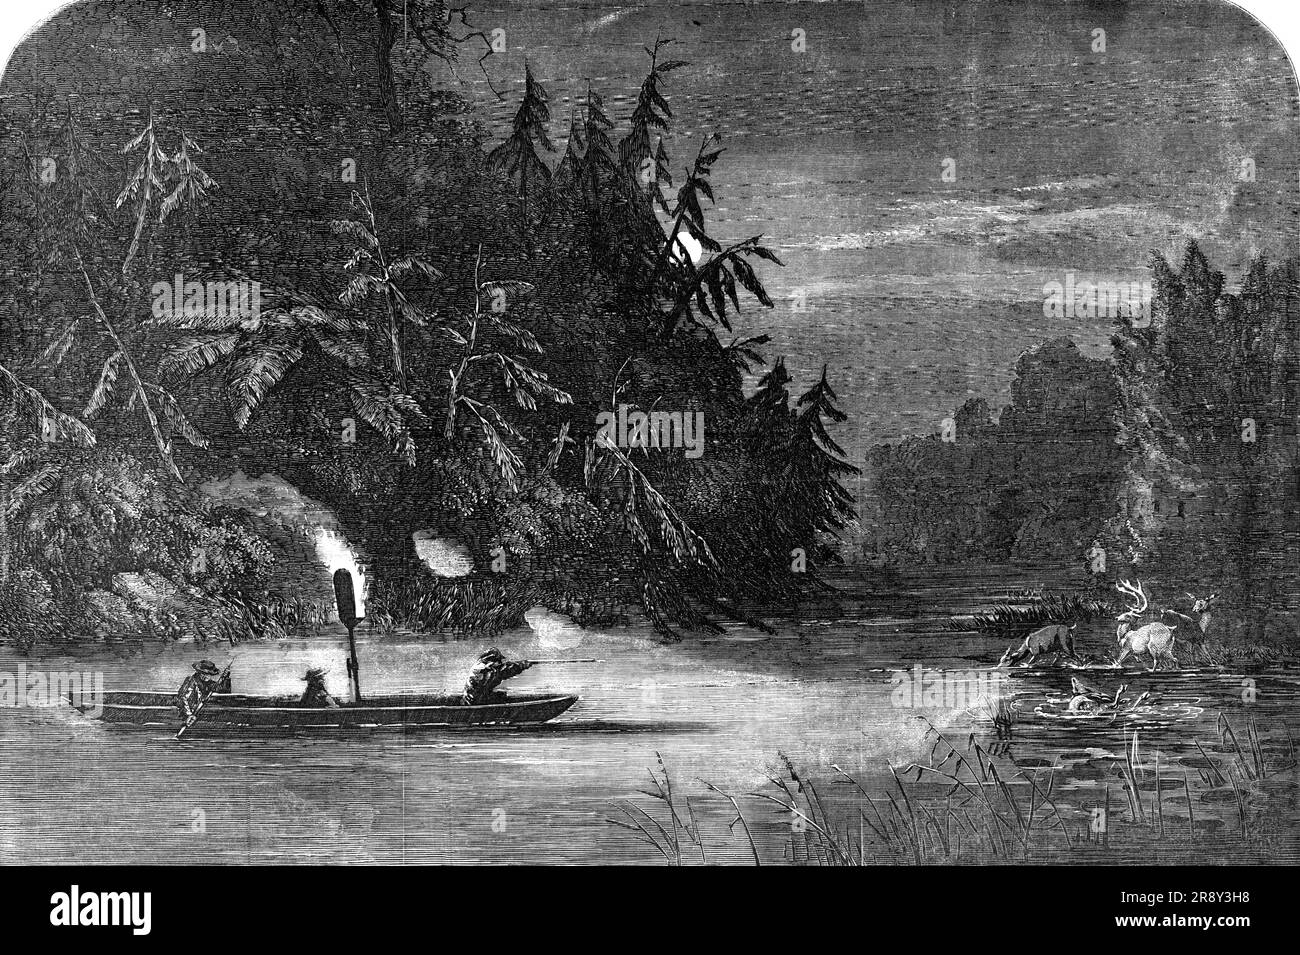 Water-Hunting for Deer: Eine Nachtszene auf dem Fluss Susquehanna, Pennsylvania, 1857. Ein weiteres Beispiel des Revolverprinzips, das auf das Gewehr angewendet wird, ist die sogenannte "Wasserjagd" in dem Teil Nordamerikas, in dem sich Mr. Catlin (der gefeierte amerikanische Entdecker und Sportler) als "erzogen" beschreibt. In den warmen Sommernächten kommen die Hirsche in die Flüsse, um zu baden und die Wasserpflanzen zu füttern. Das Problem mit dem gewöhnlichen Gewehr war, dass nur ein Schuss möglich war, da sie aufgrund ihrer Schnelligkeit und Schüchternheit in einem Moment außer Sichtweite sind. M Stockfoto